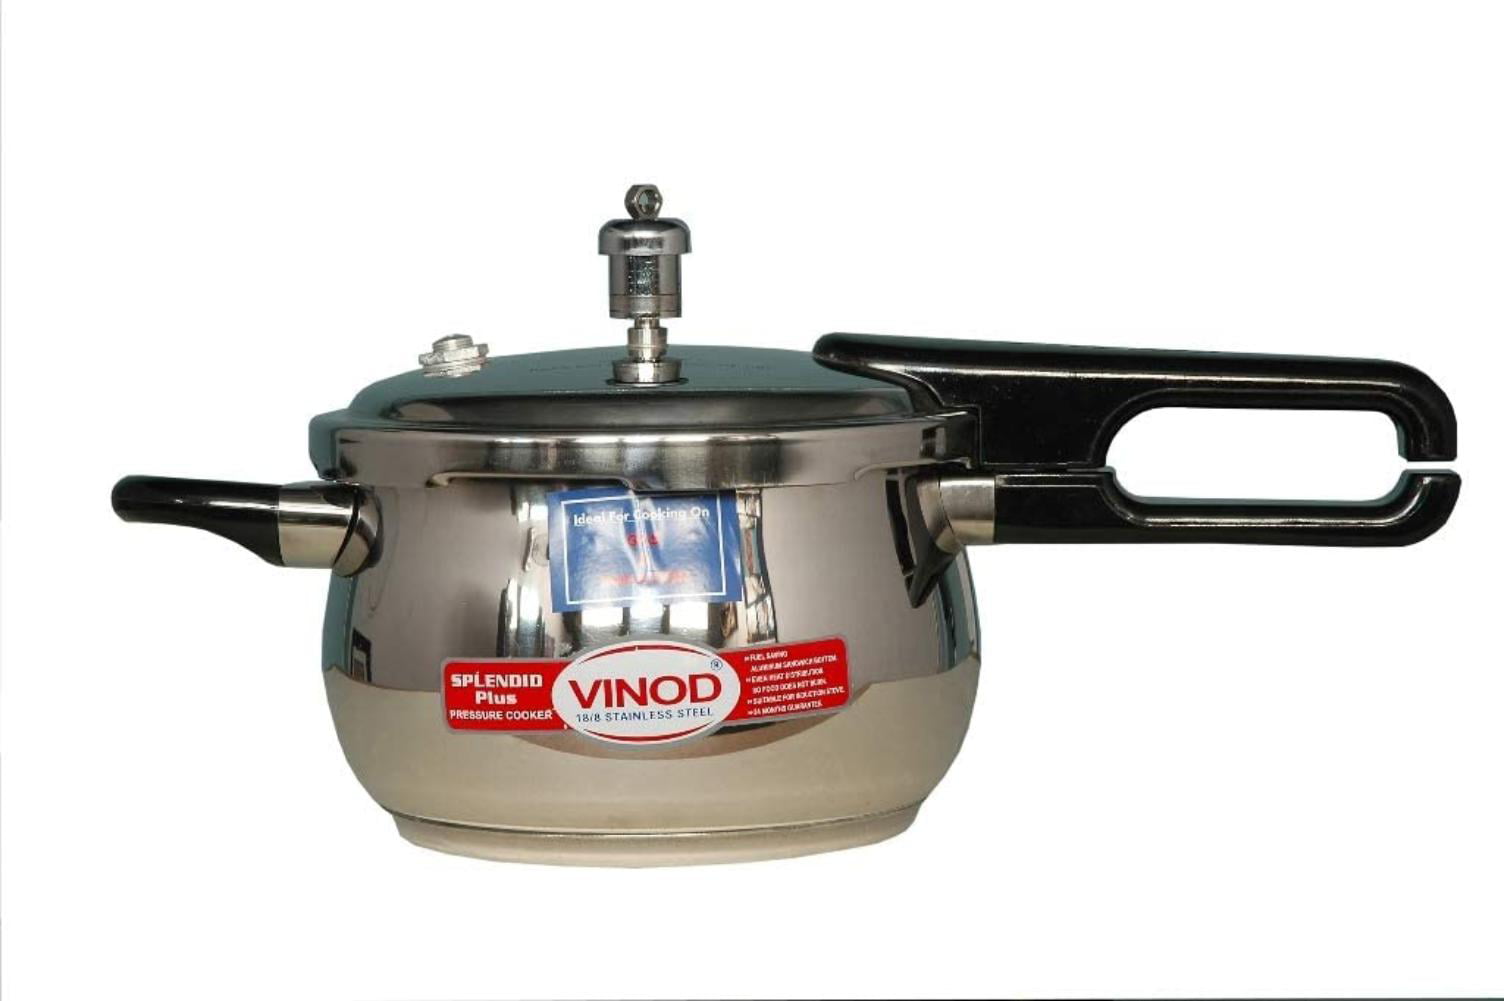 Vinod Splendid Plus Handi Stainless Steel Pressure Cooker, 2.64 Quart